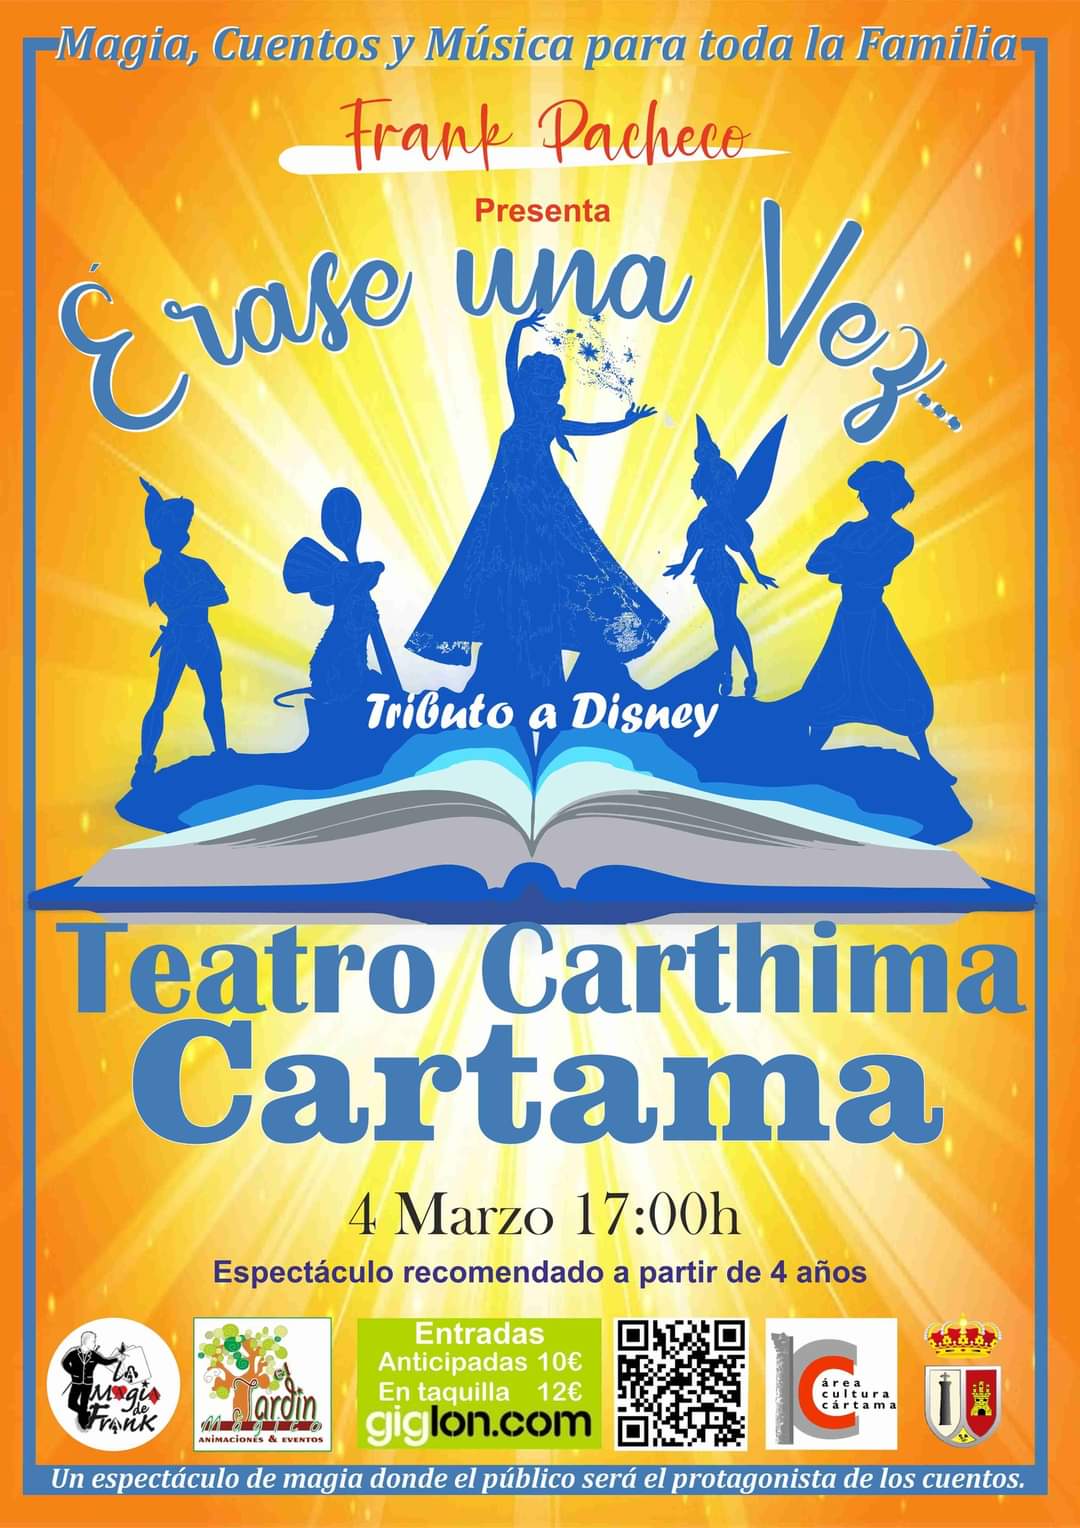 El espectáculo para toda la familia “Érase una vez” llegará al Teatro Carthima el 4 de marzo